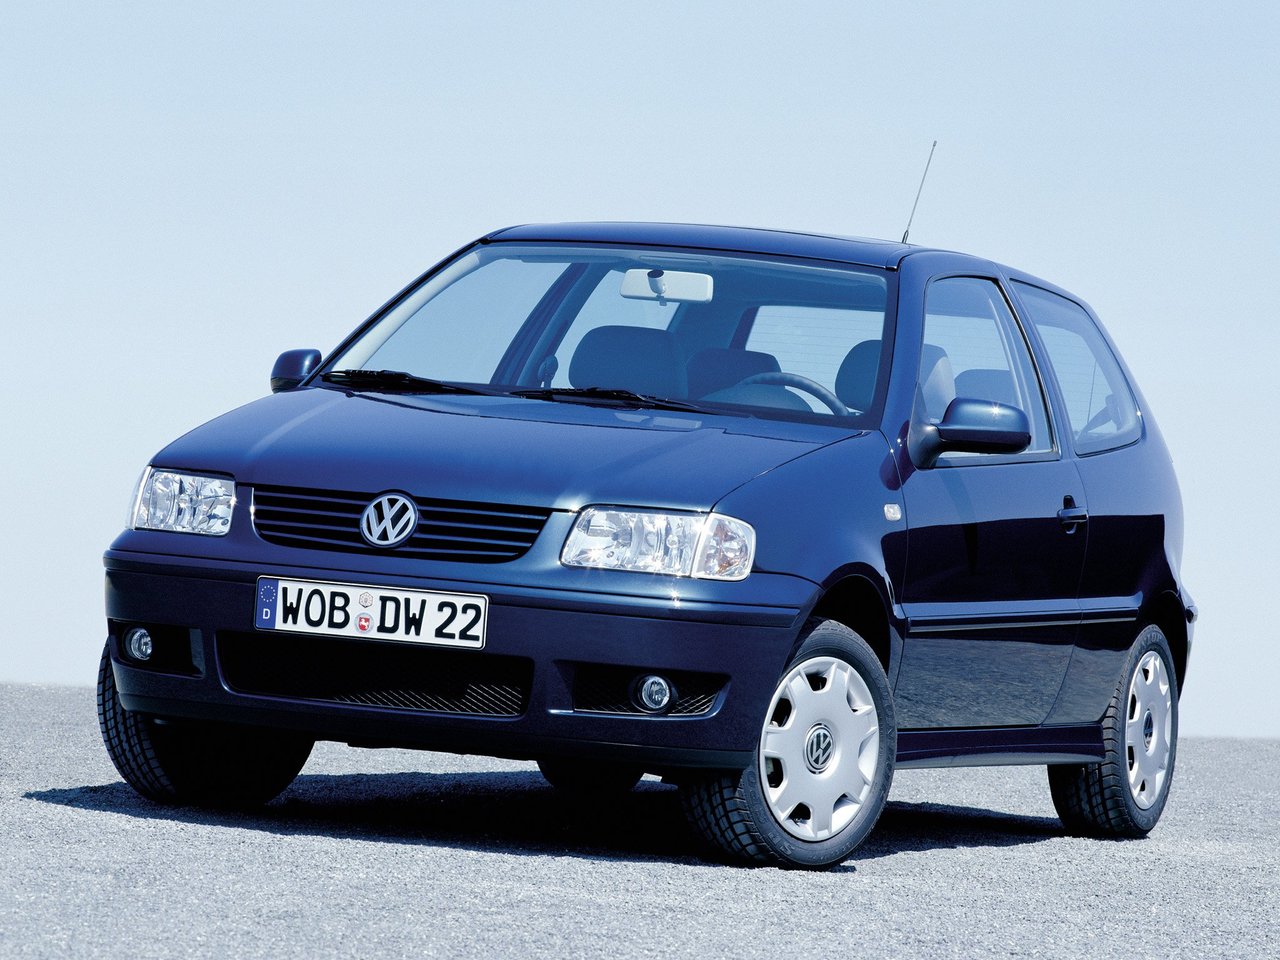 Volkswagen Polo, 1999 - 2001, III Рестайлинг, хэтчбек 3 дв.: купить, технические характеристики, отзывы и объявления